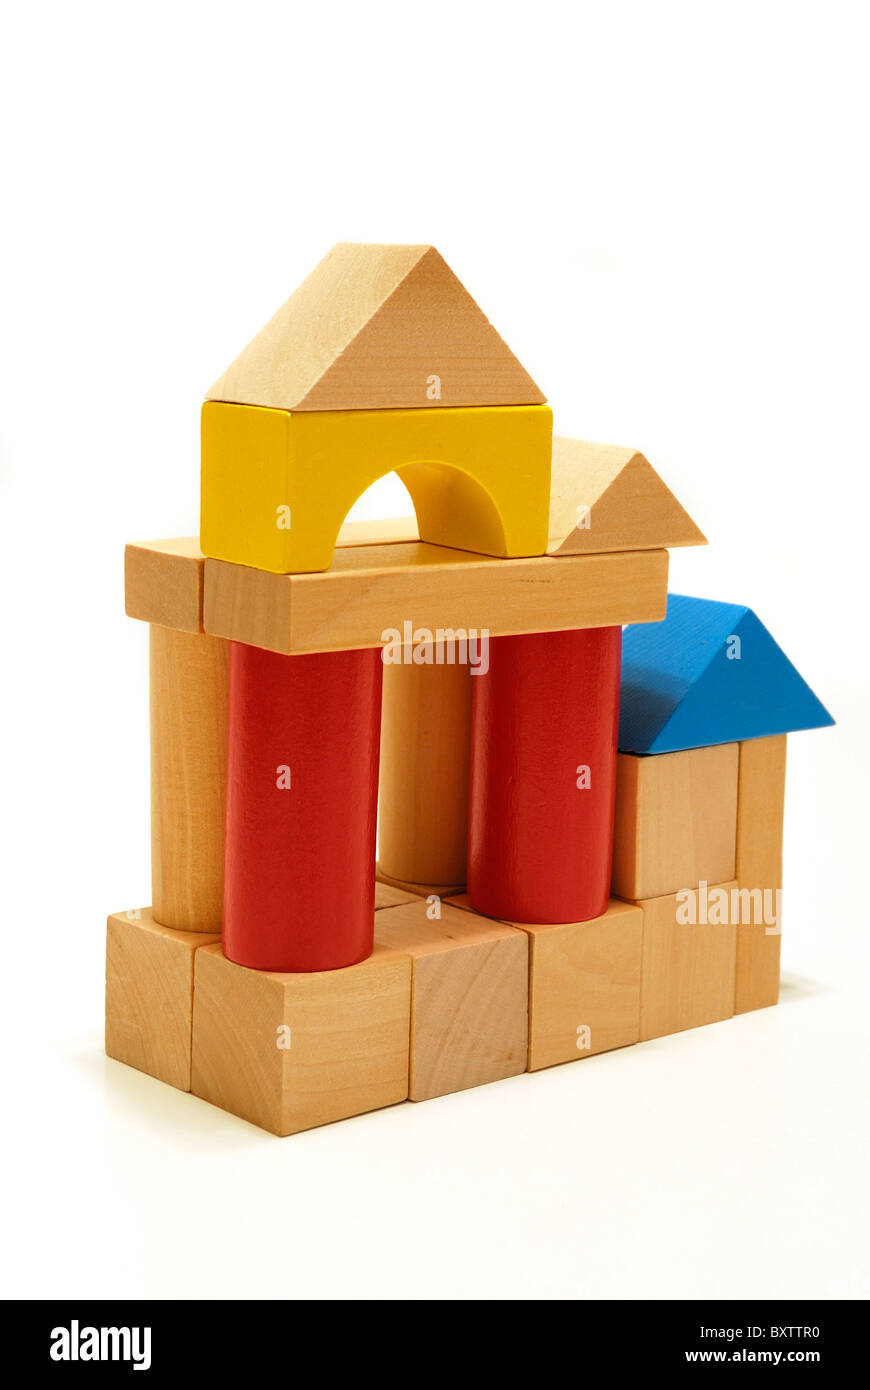 Ensemble de blocs de construction colorées empilées pour former des maisons. Pourrait signifier l'éducation ainsi que la construction d'une fondation pour l'entreprise. Les blocs sont aléatoires. Banque D'Images